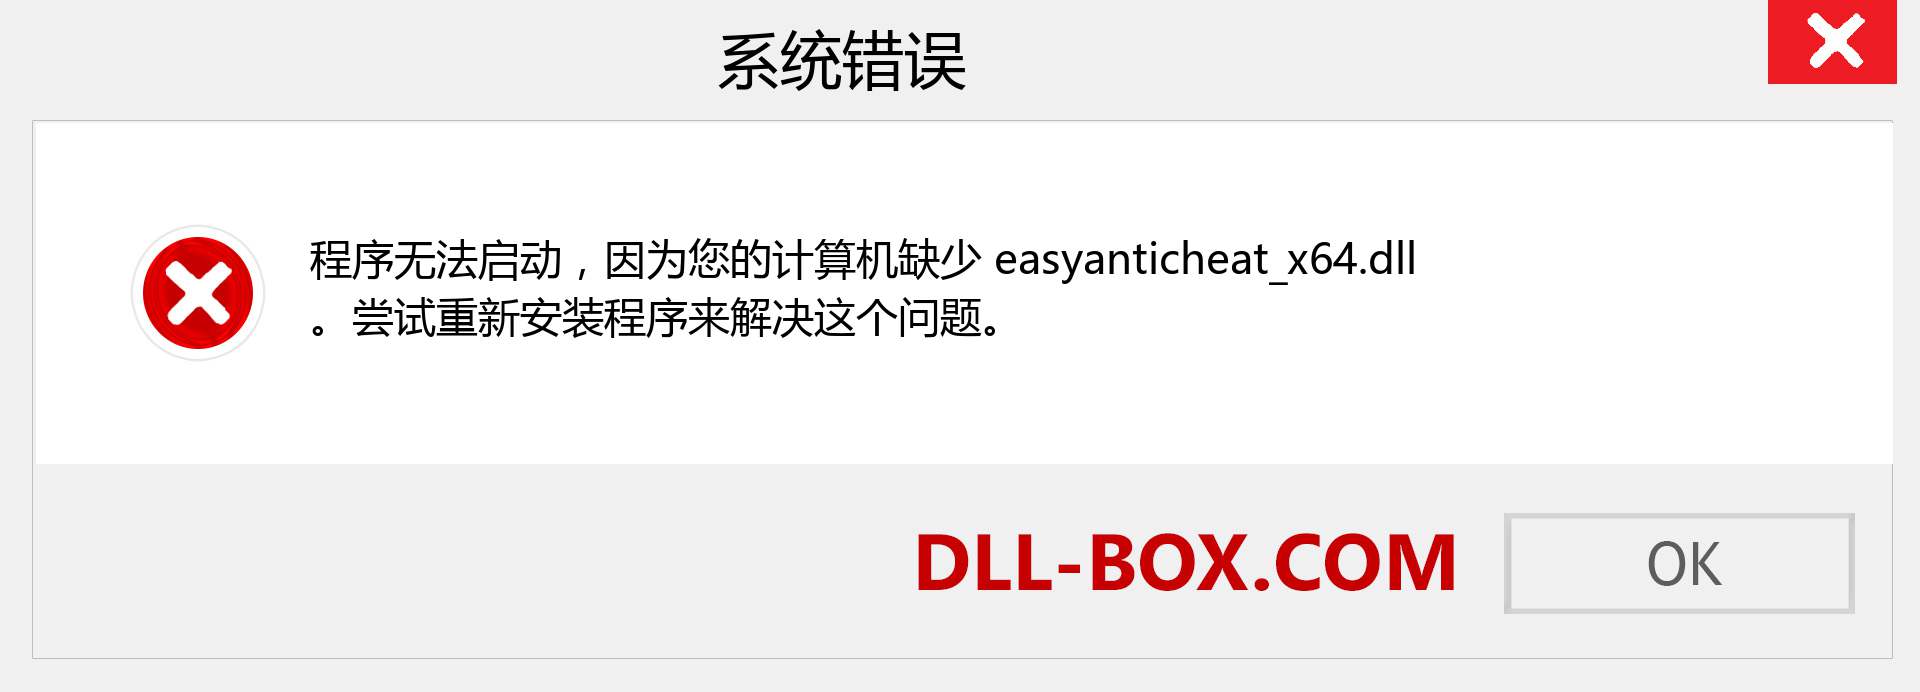 easyanticheat_x64.dll 文件丢失？。 适用于 Windows 7、8、10 的下载 - 修复 Windows、照片、图像上的 easyanticheat_x64 dll 丢失错误